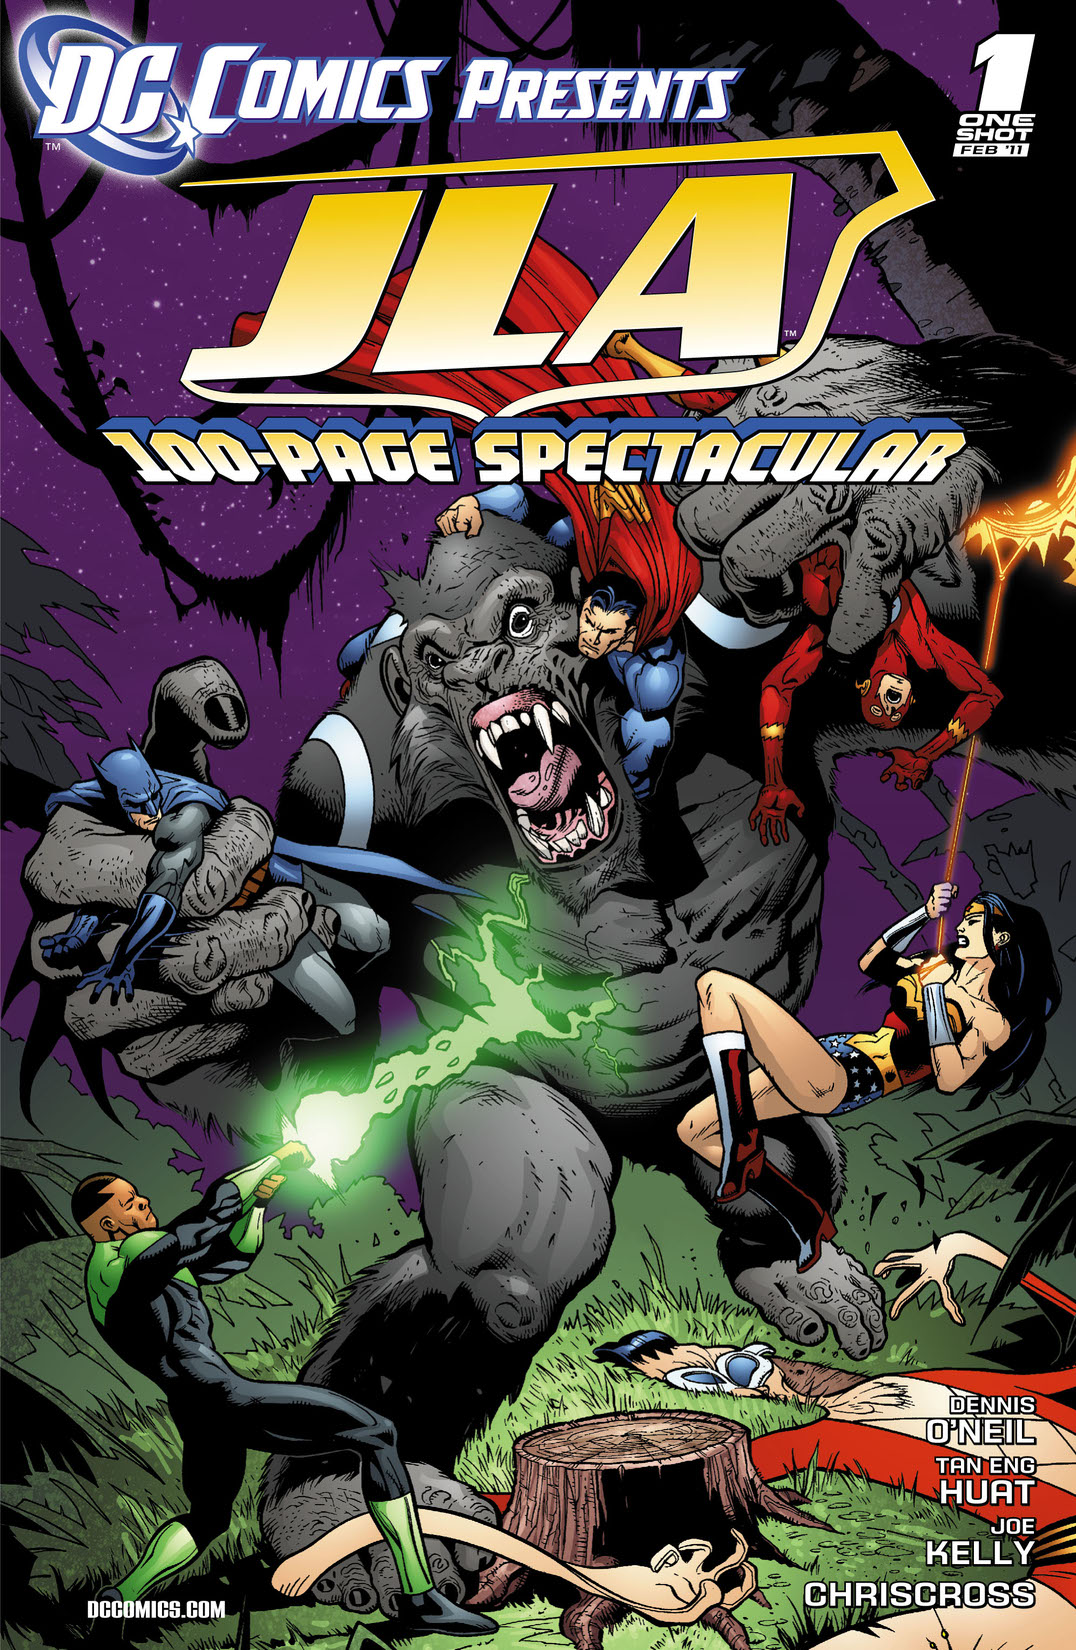 DC Comics Presents: JLA (2010-) #1 preview images